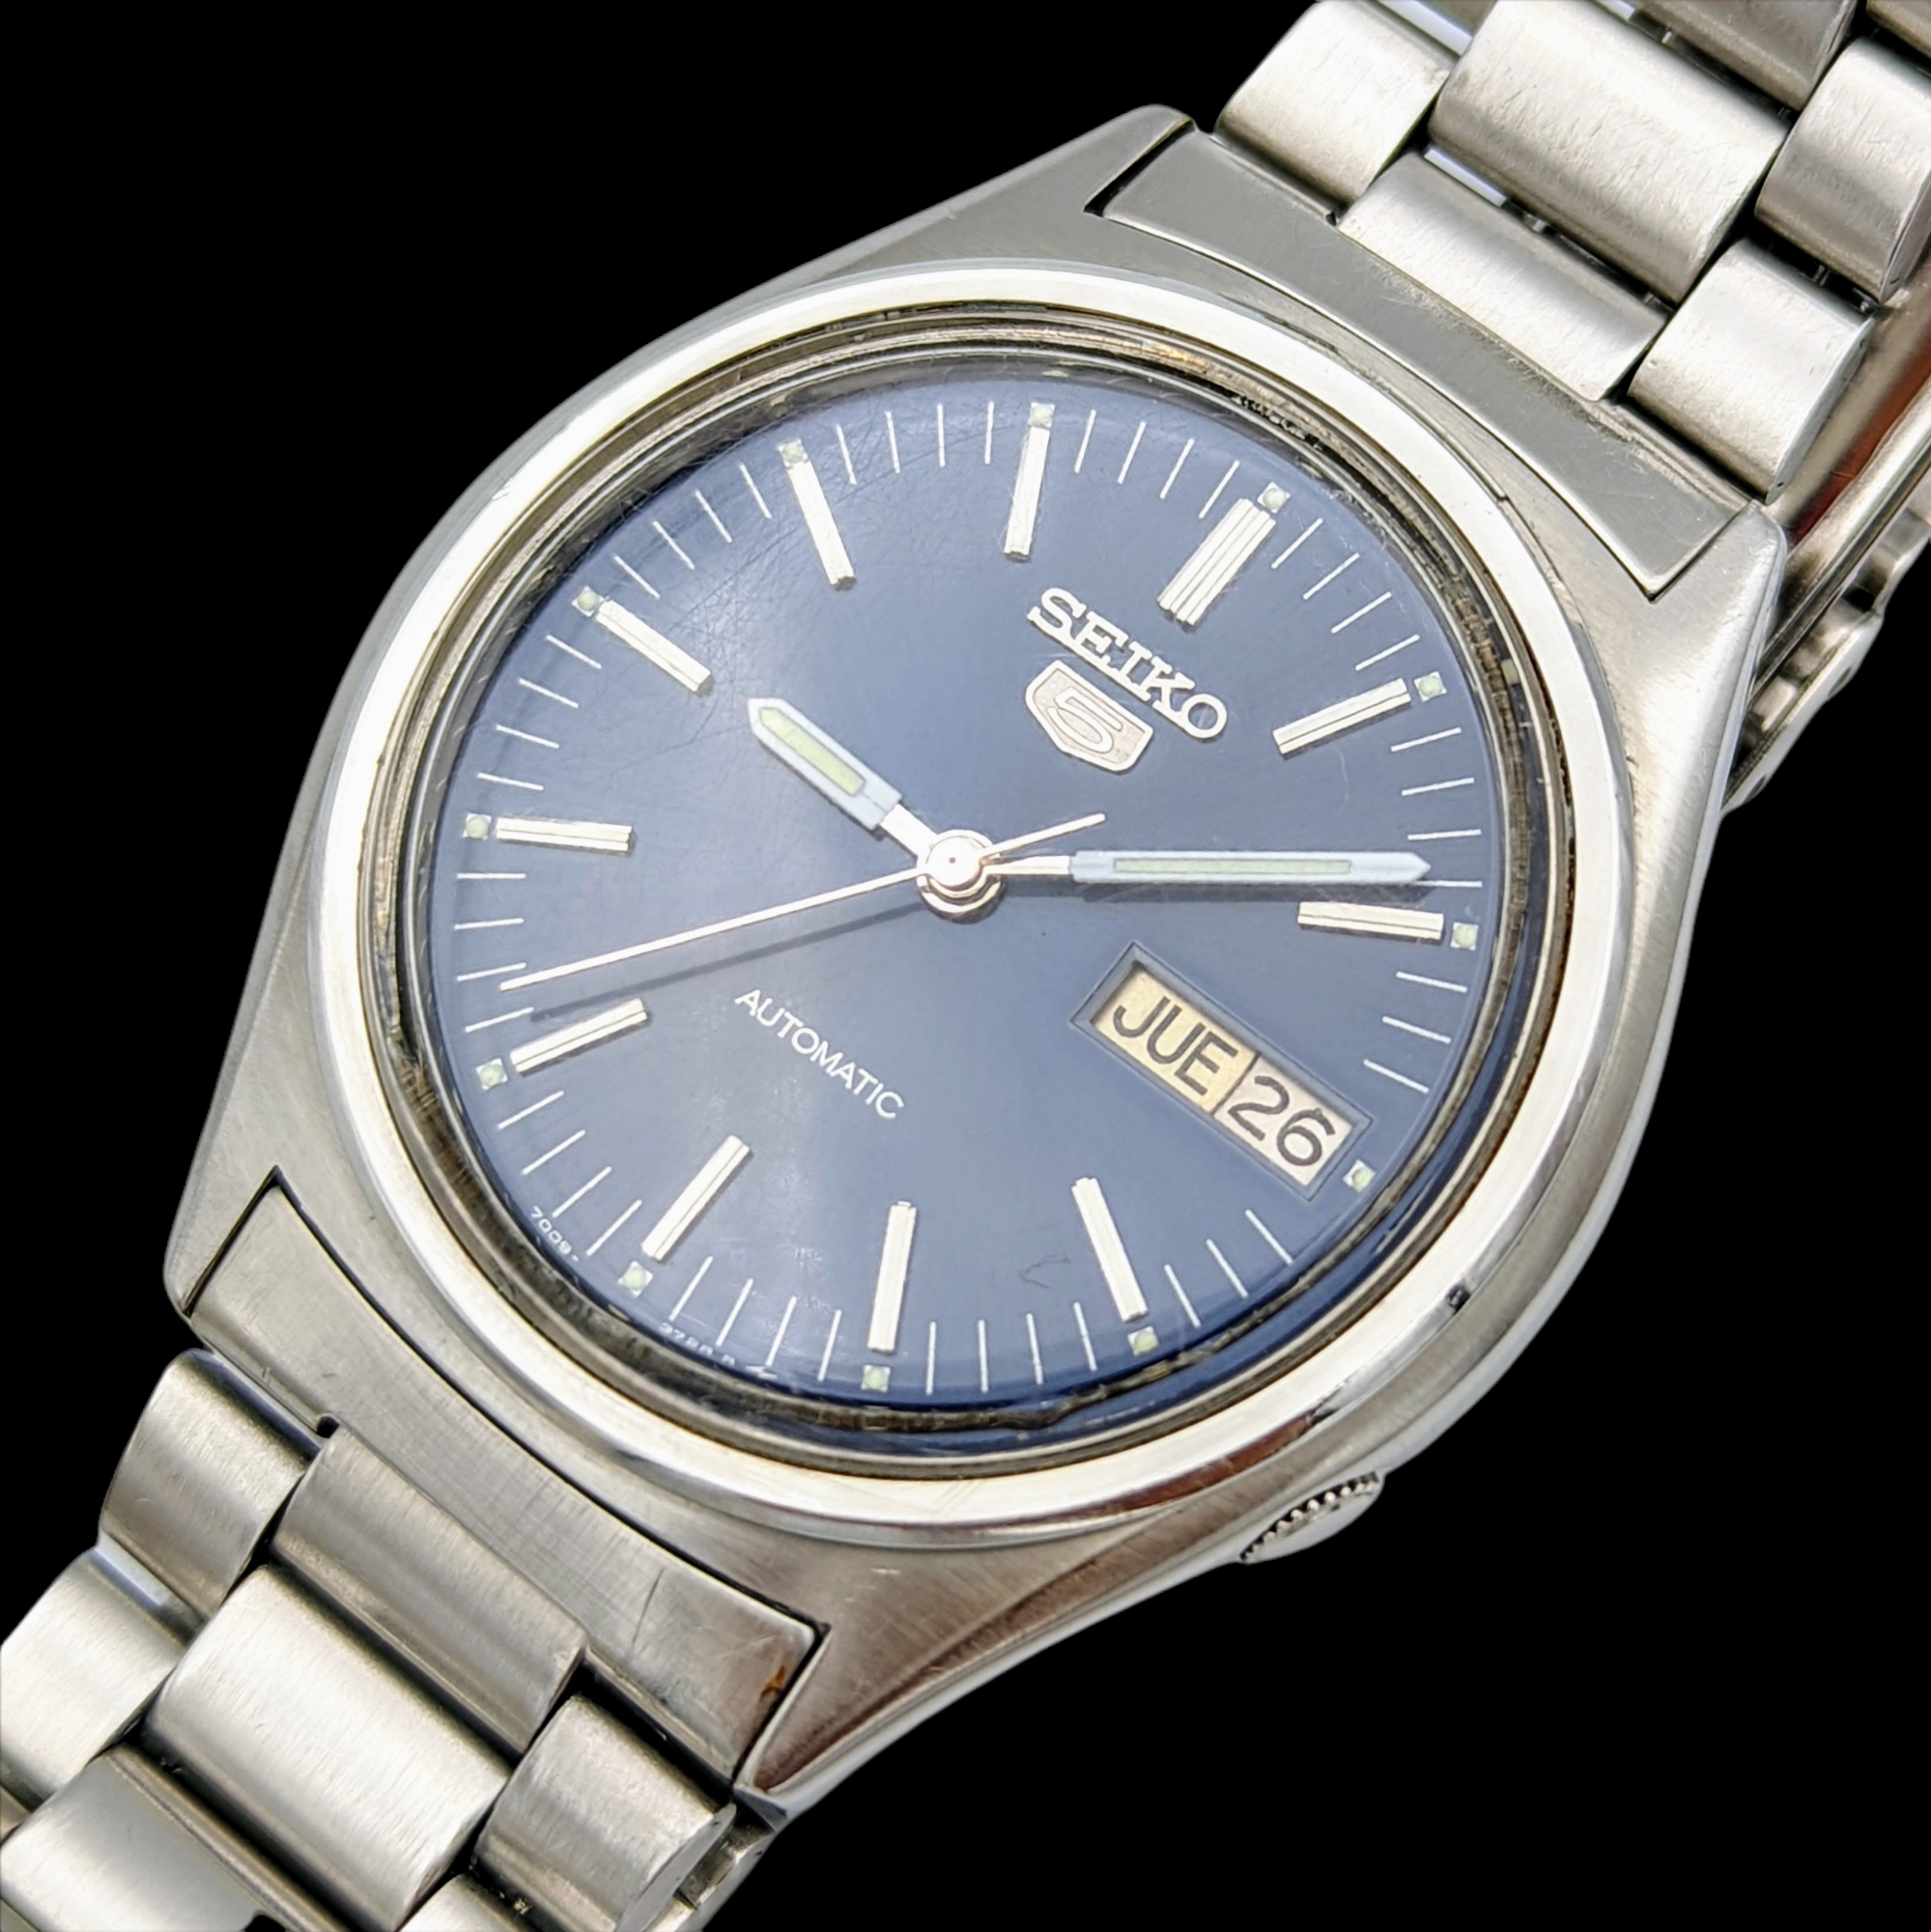 1985 SEIKO 5 Automatic Watch Day/Date Indicator